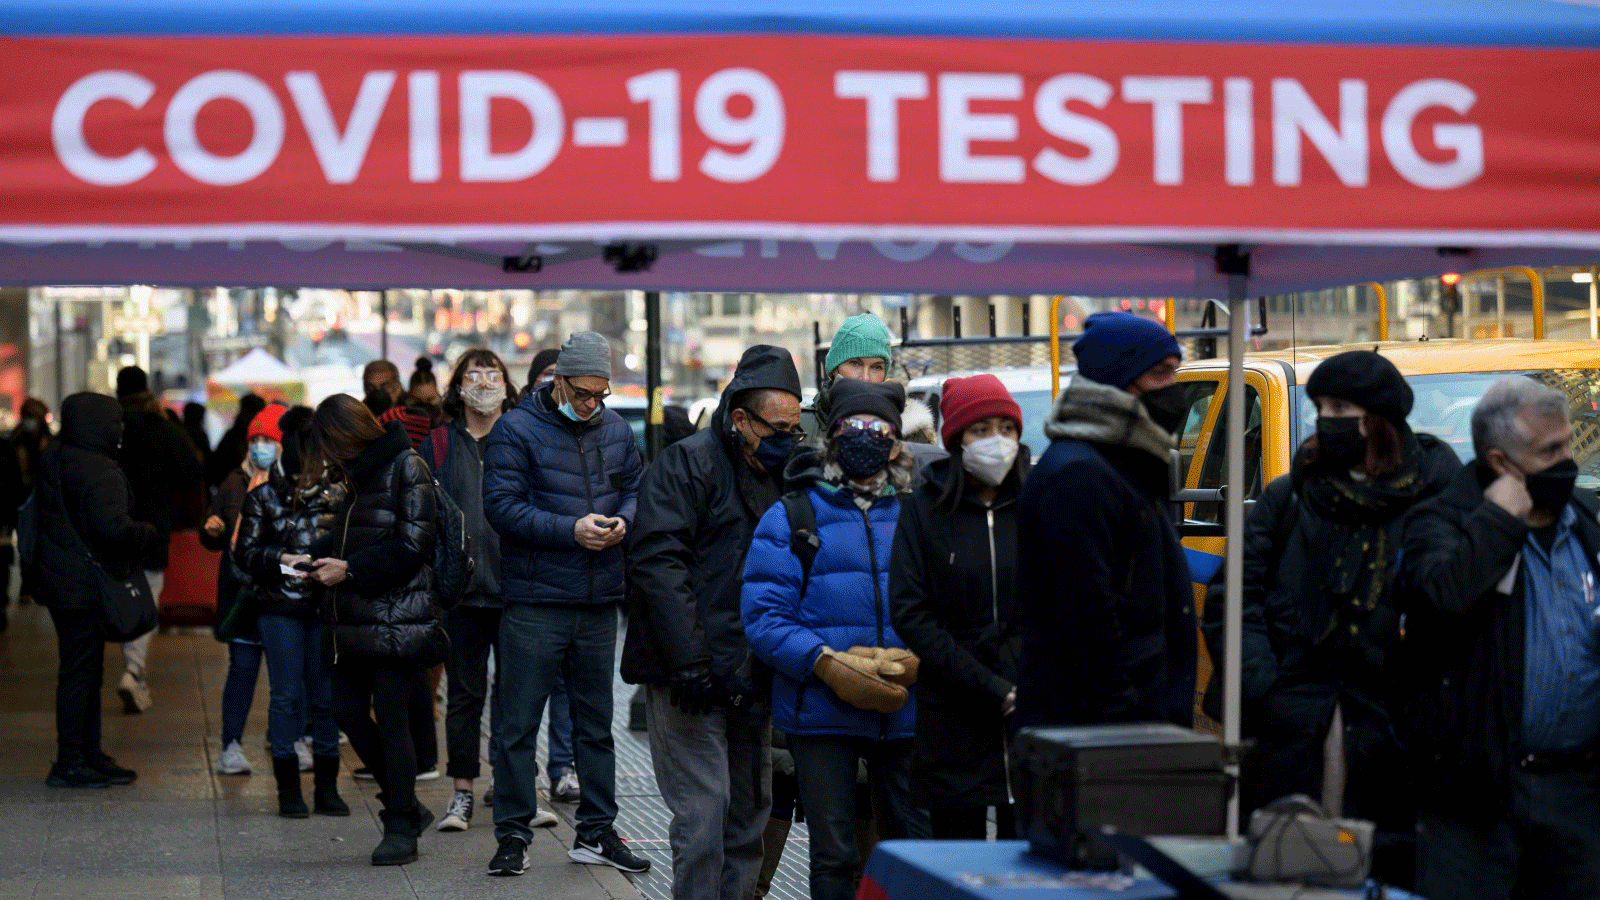  الناس ينتظرون في طابور لتلقي اختبار COVID-19 في نيويورك، الولايات المتحدة، 4 كانون الثاني/ يناير 2022